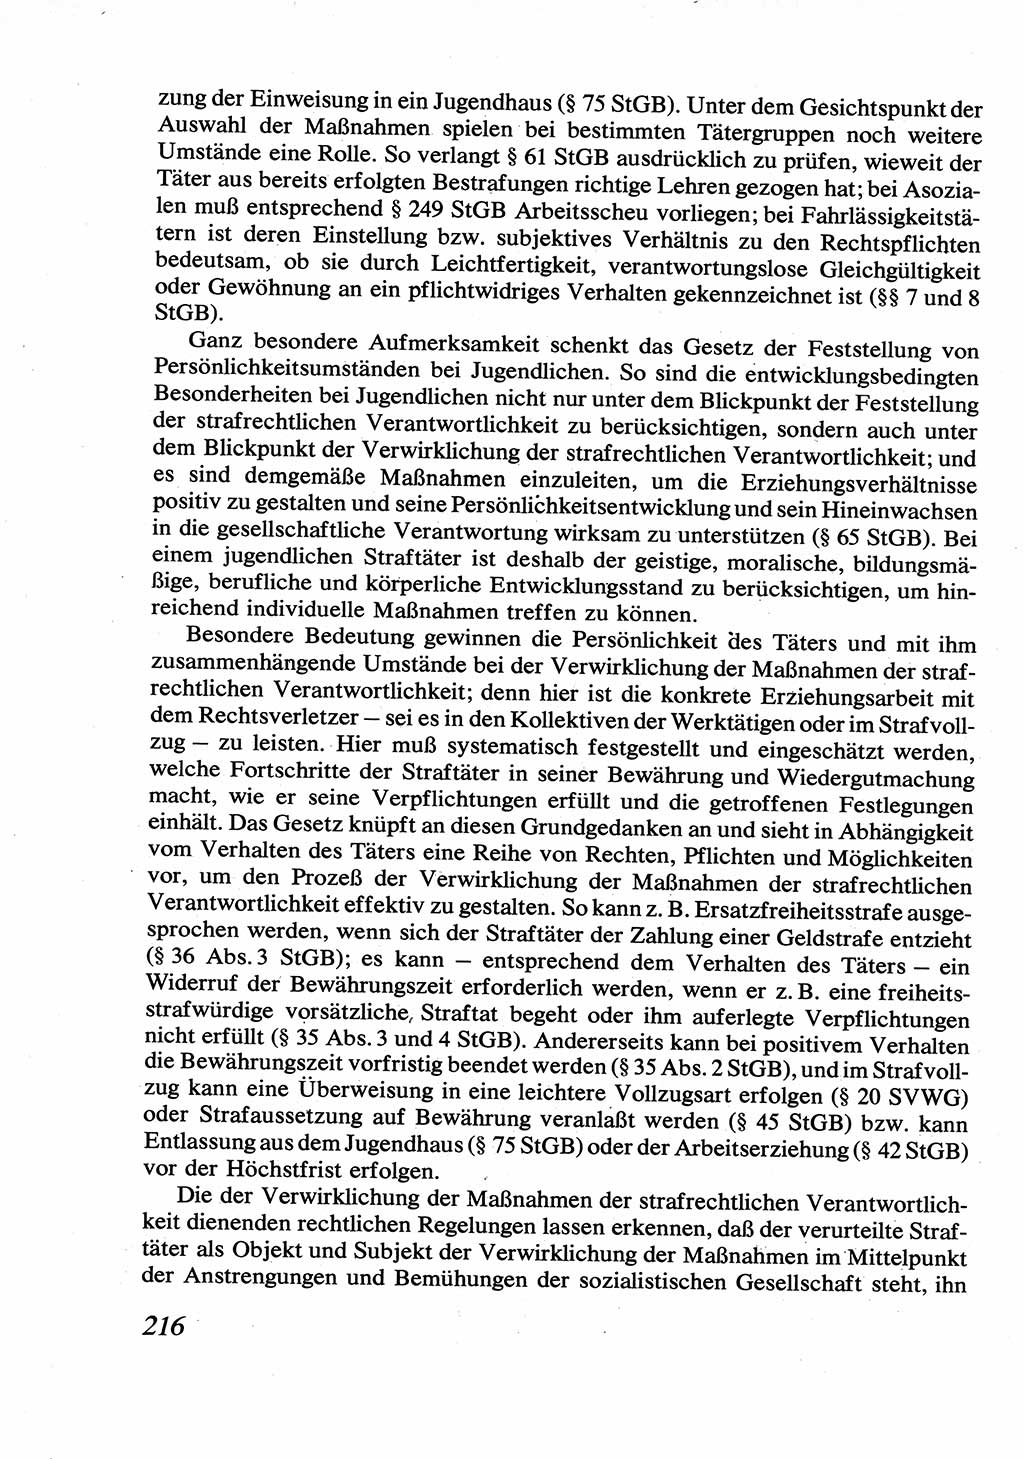 Strafrecht [Deutsche Demokratische Republik (DDR)], Allgemeiner Teil, Lehrbuch 1976, Seite 216 (Strafr. DDR AT Lb. 1976, S. 216)